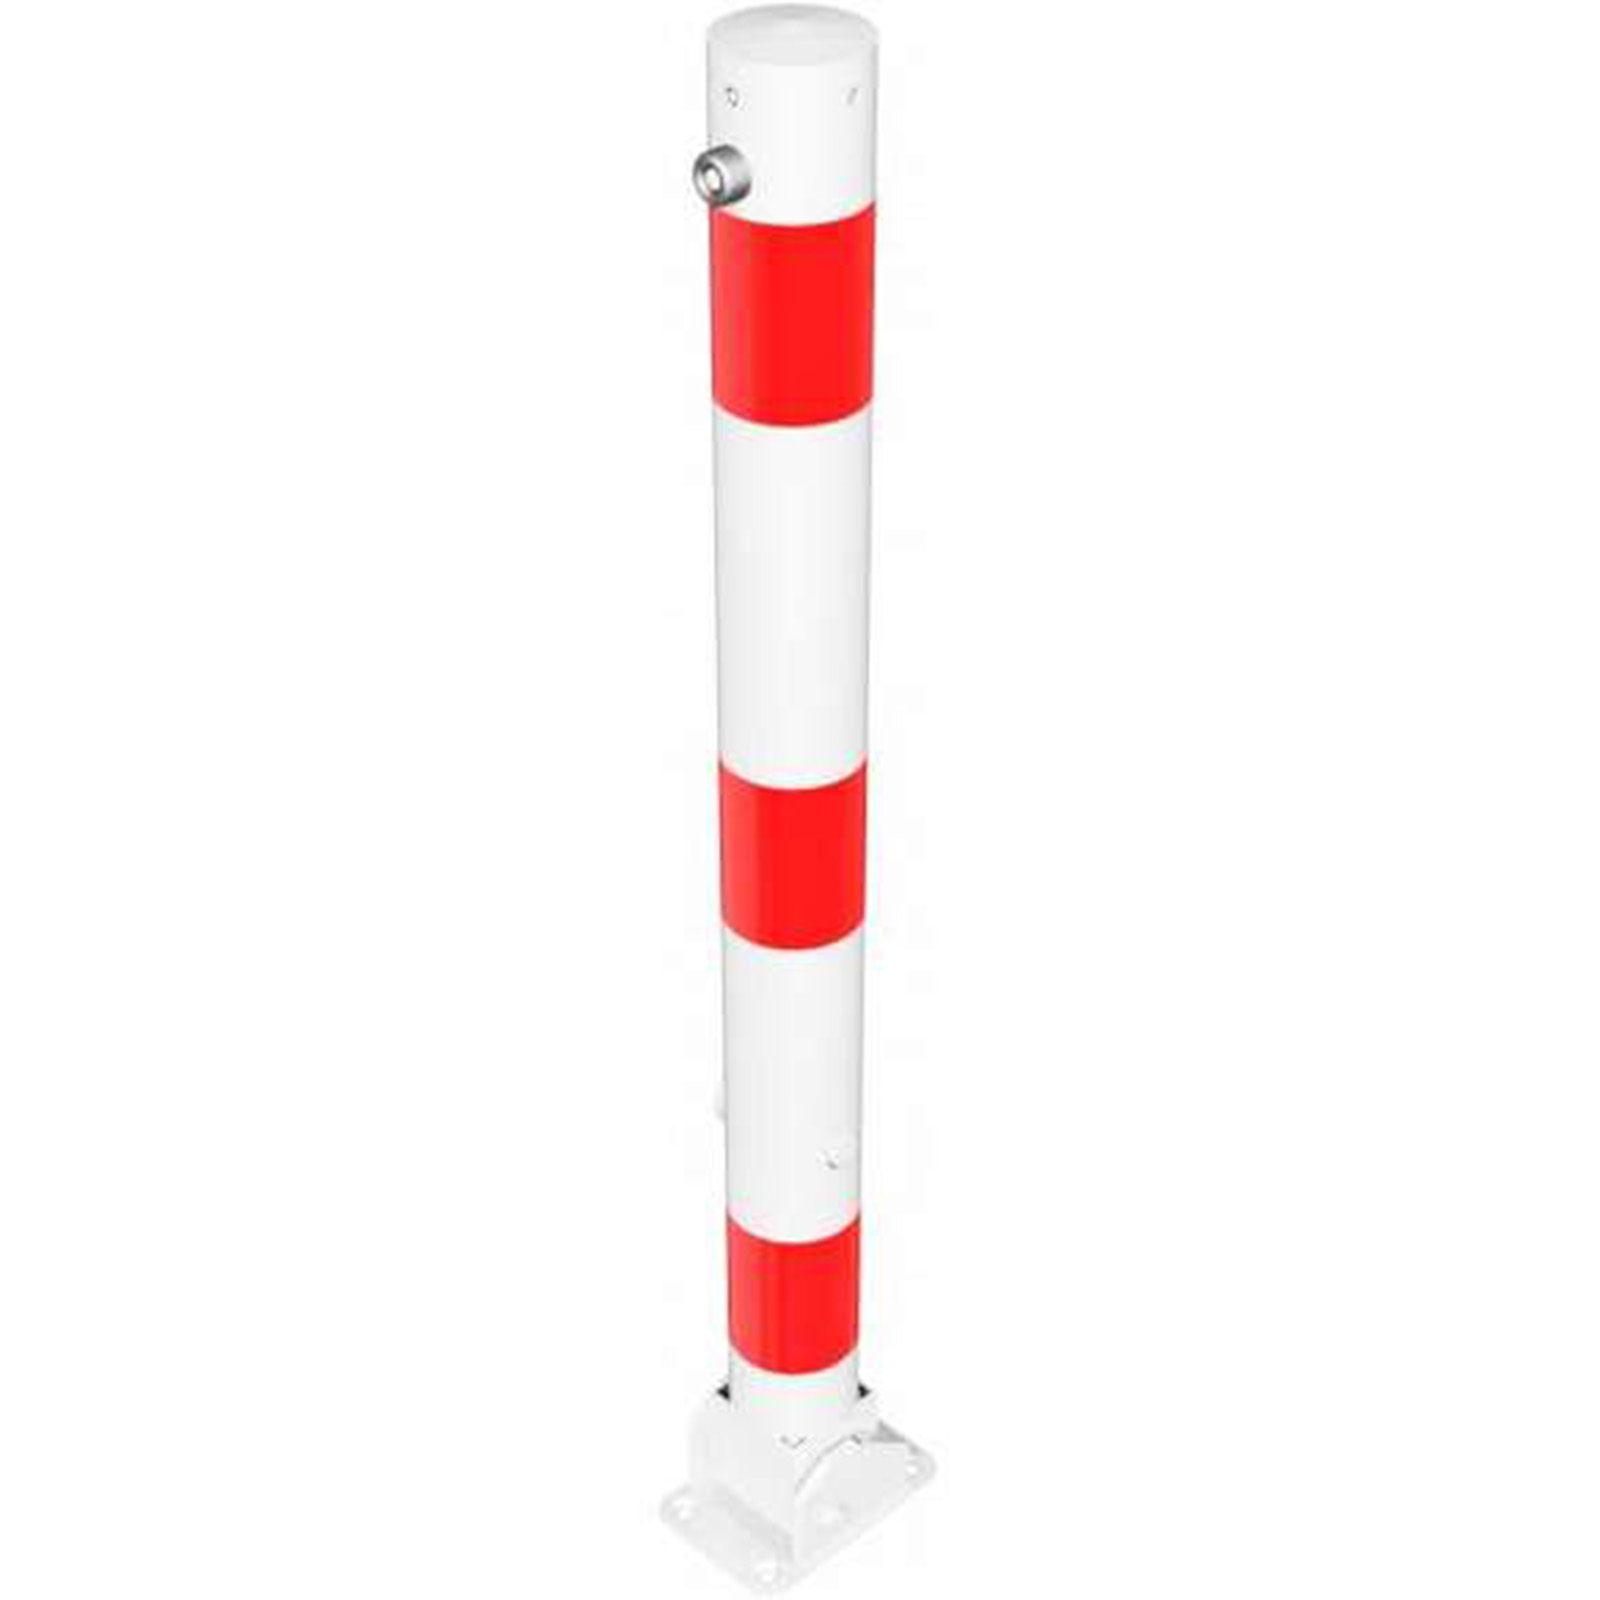 Sperrpfosten Ø76 umlegbar 476FUB weiß/rot beschichtet mit Bodenplatte und Dreikantverschluss